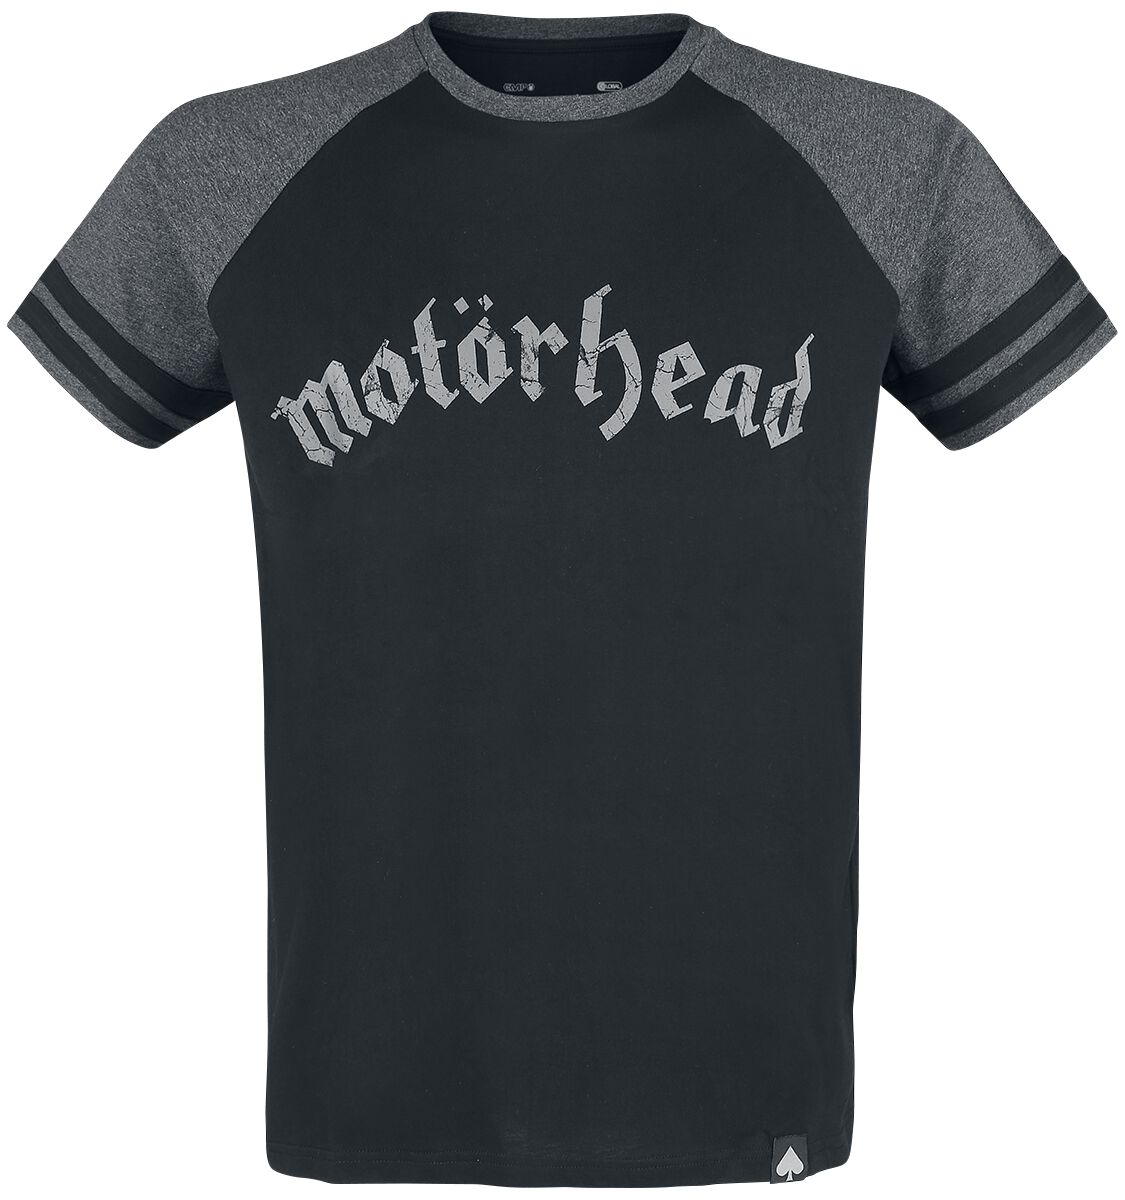 Motörhead T-Shirt - EMP Signature Collection - S bis 5XL - für Männer - Größe M - schwarz/grau meliert  - EMP exklusives Merchandise!